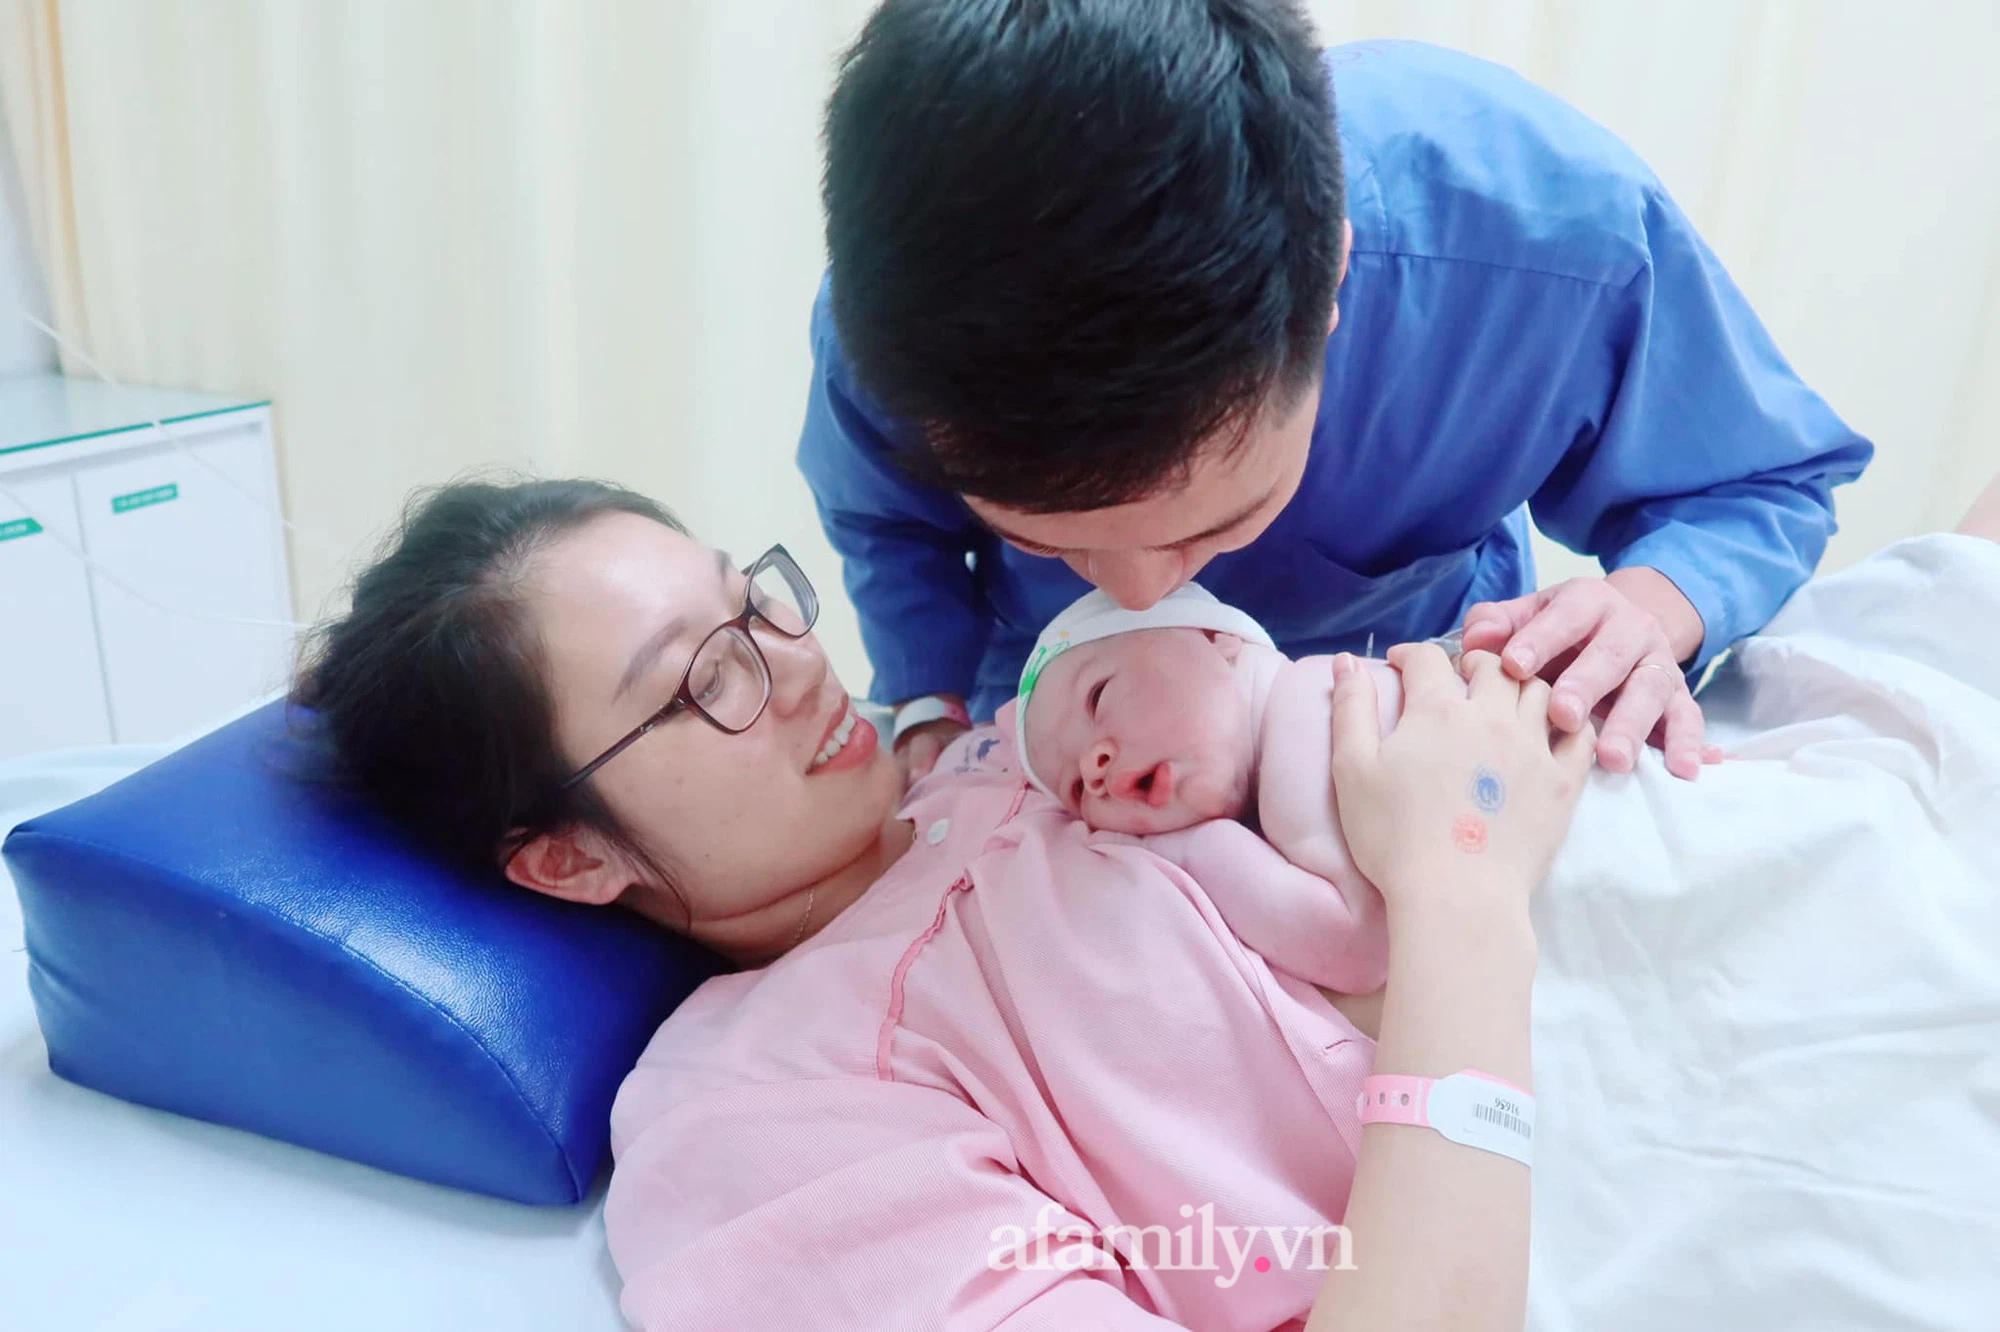 Mẹ Hà Nội đẻ thường con 4kg dễ dàng, chia sẻ bí quyết cực hay cho các mẹ ngại sinh mổ - Ảnh 1.